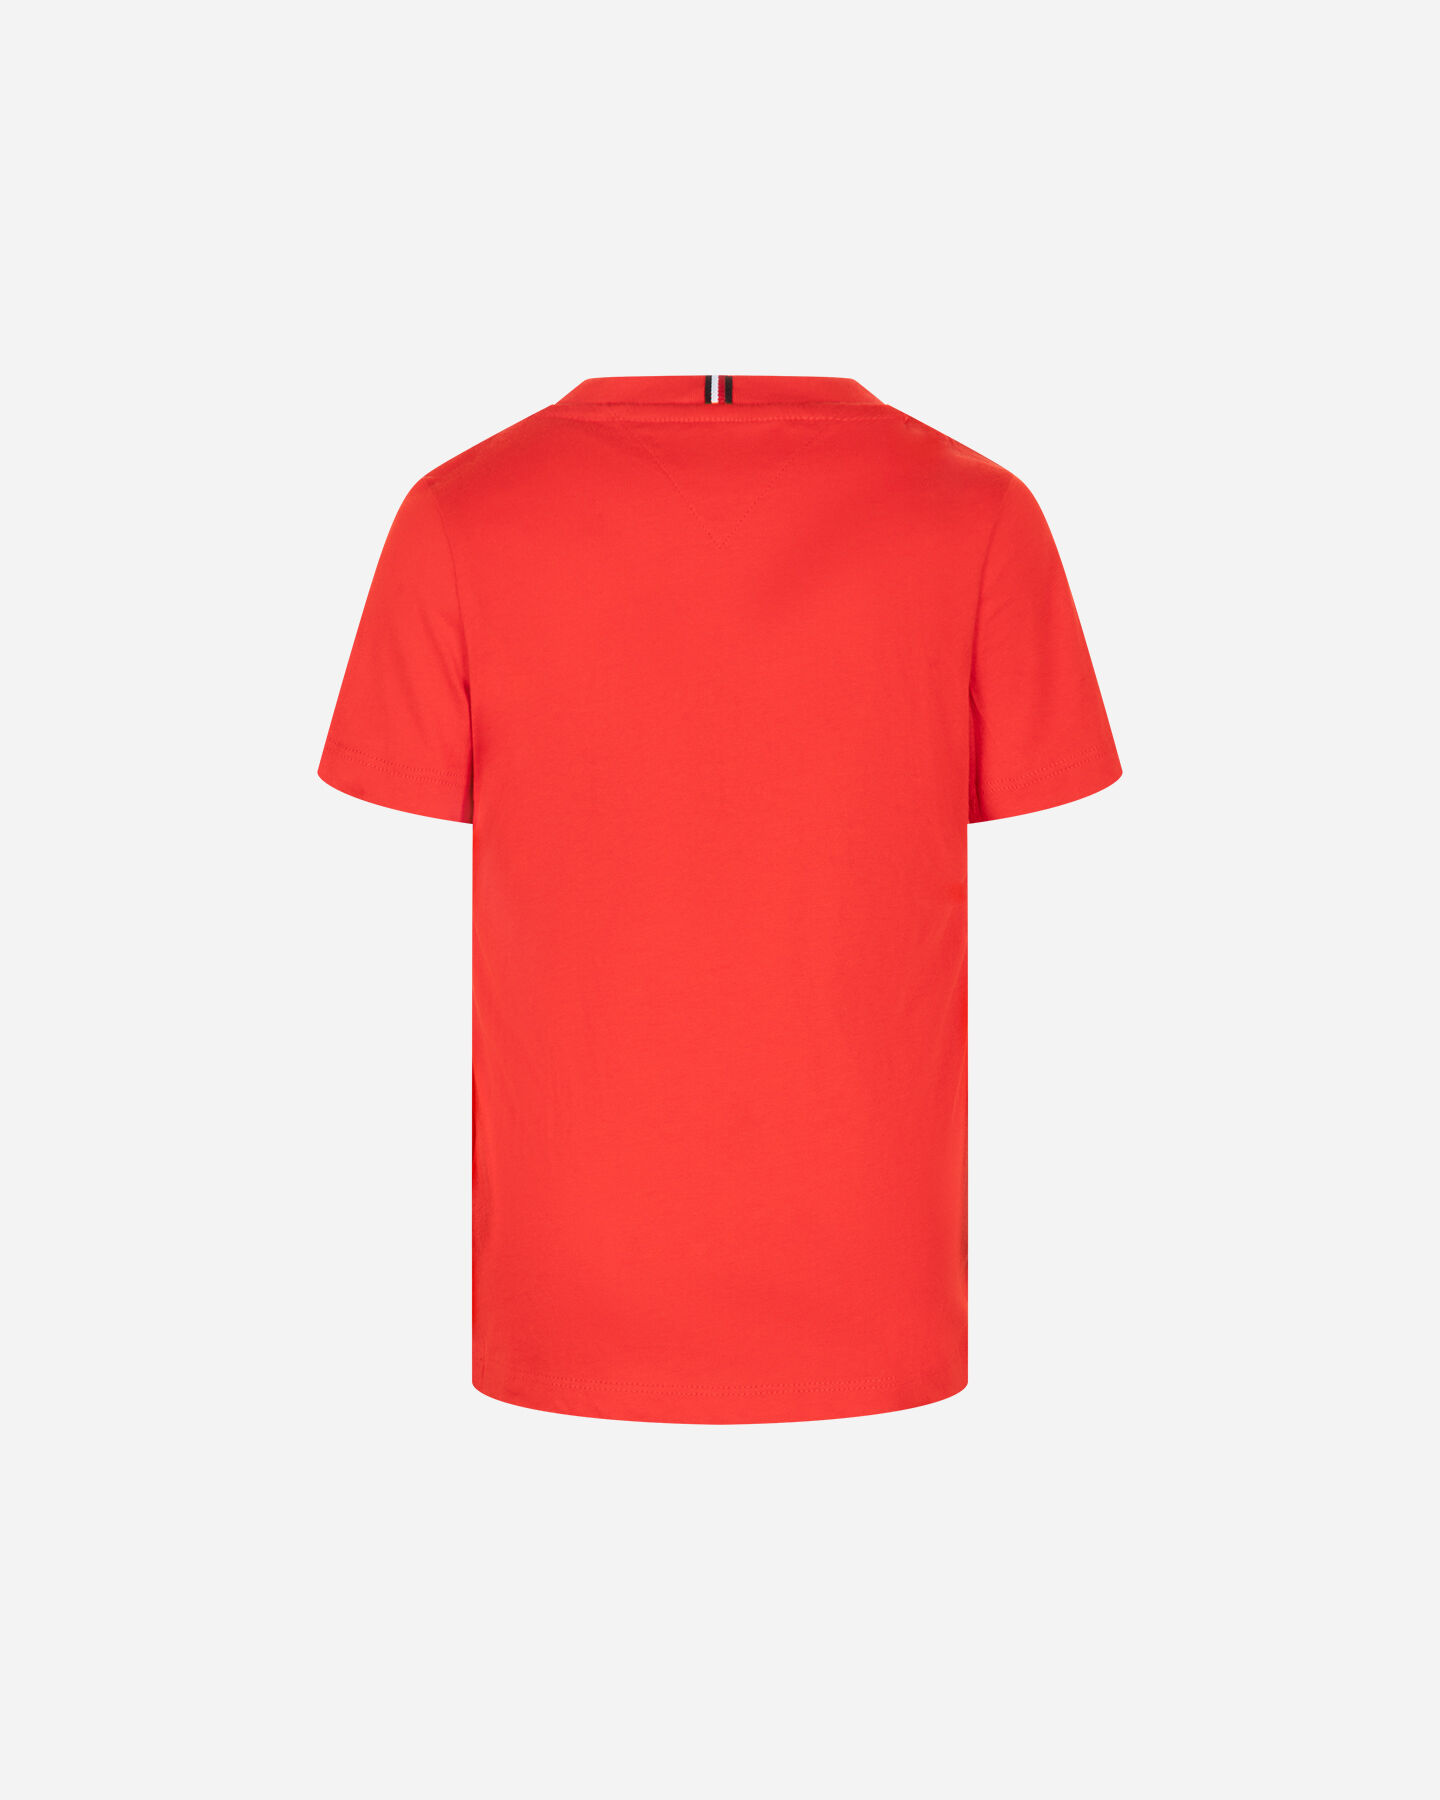  T-Shirt TOMMY HILFIGER SCRIPT FIERCE JR S4131534|Fierce Red|8 scatto 1